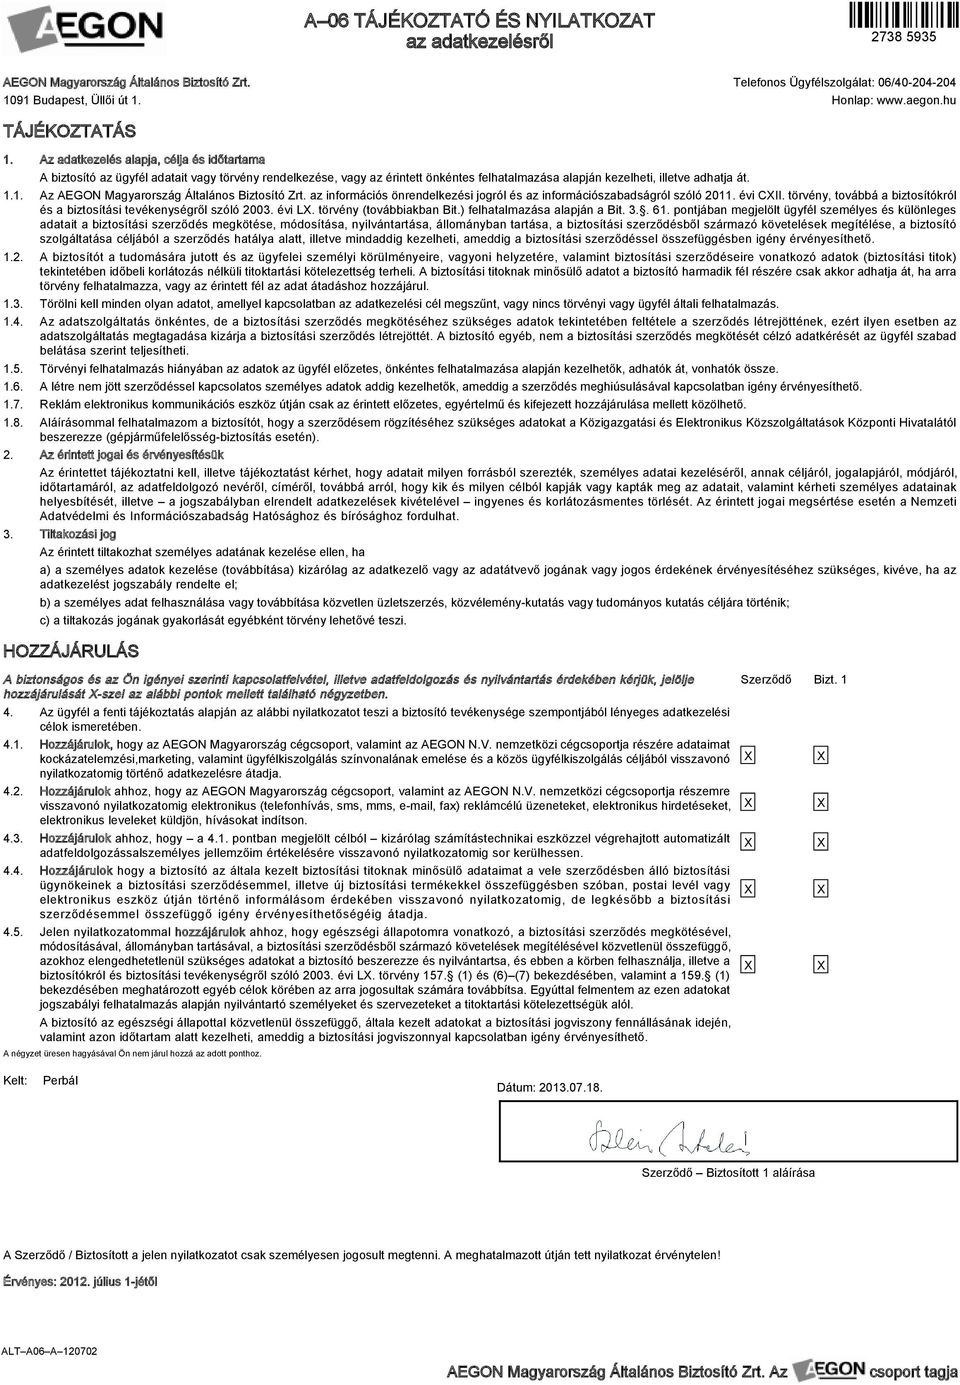 Nyilatkozatok. az AEGON Magyarország Általános Biztosító Zrt. által  elektronikusan rögzített és aláírt biztosításokhoz. - PDF Ingyenes letöltés